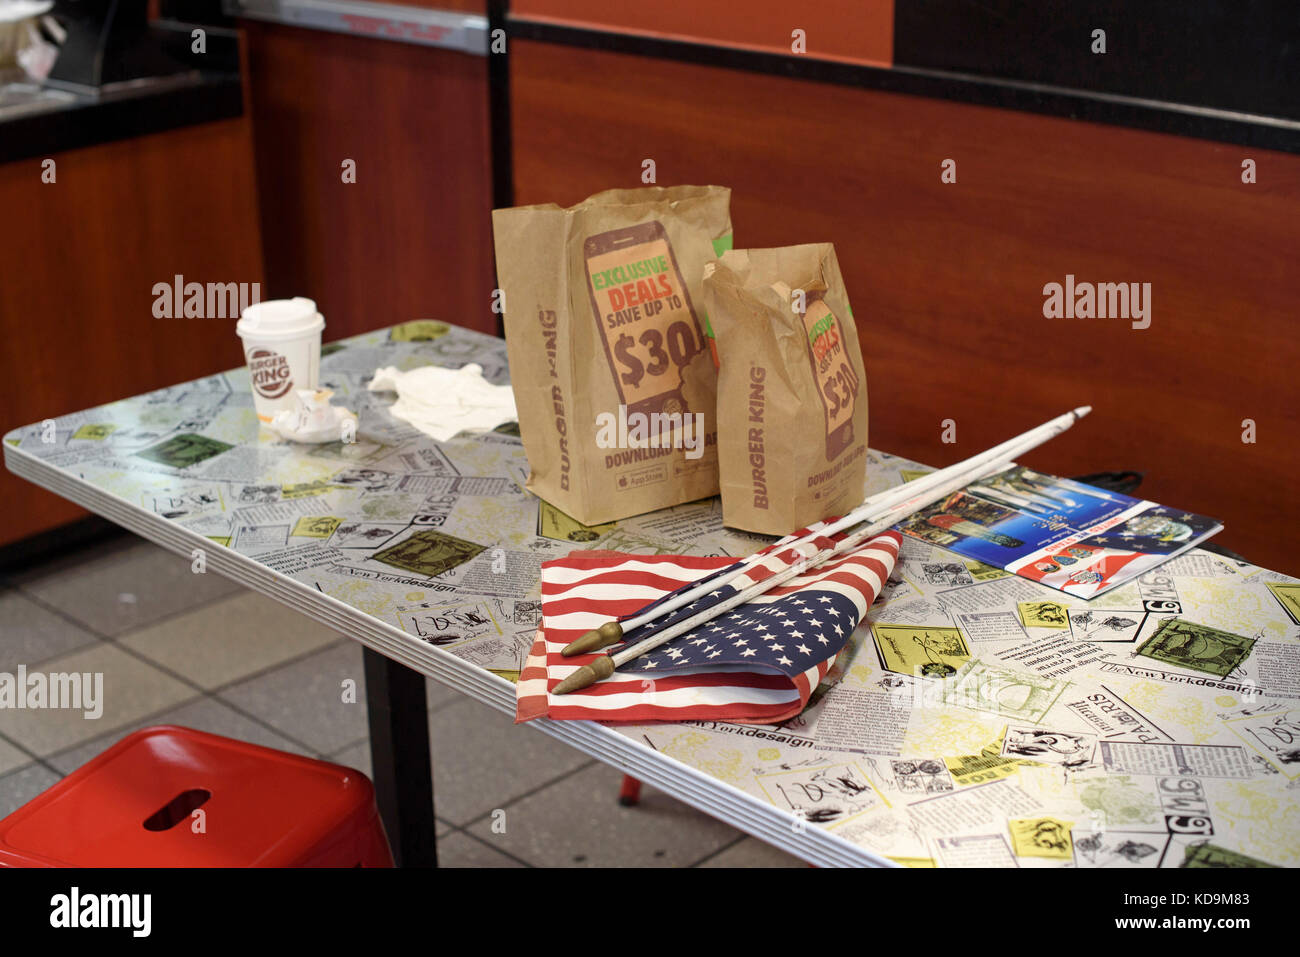 Un drapeau américain a été oublié dans un Burger King le jour de la comémoration du 9-11, le 11 septembre 2016 à New-York. Foto Stock